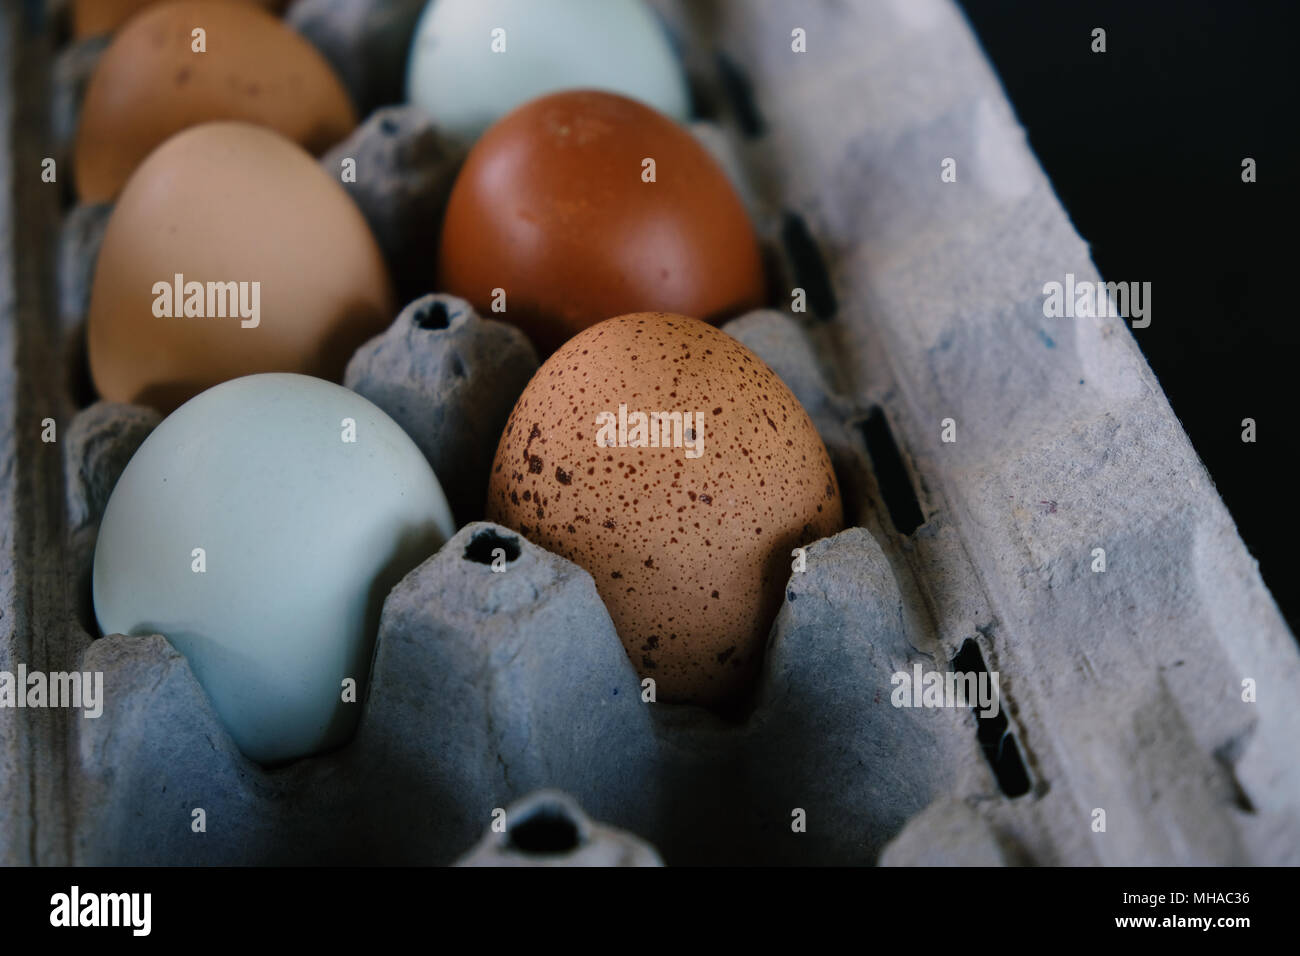 Bauernhof frisches Huhn Eier als Sammlung von Farben in Karton, Studio shot vor schwarzem Hintergrund. Stockfoto